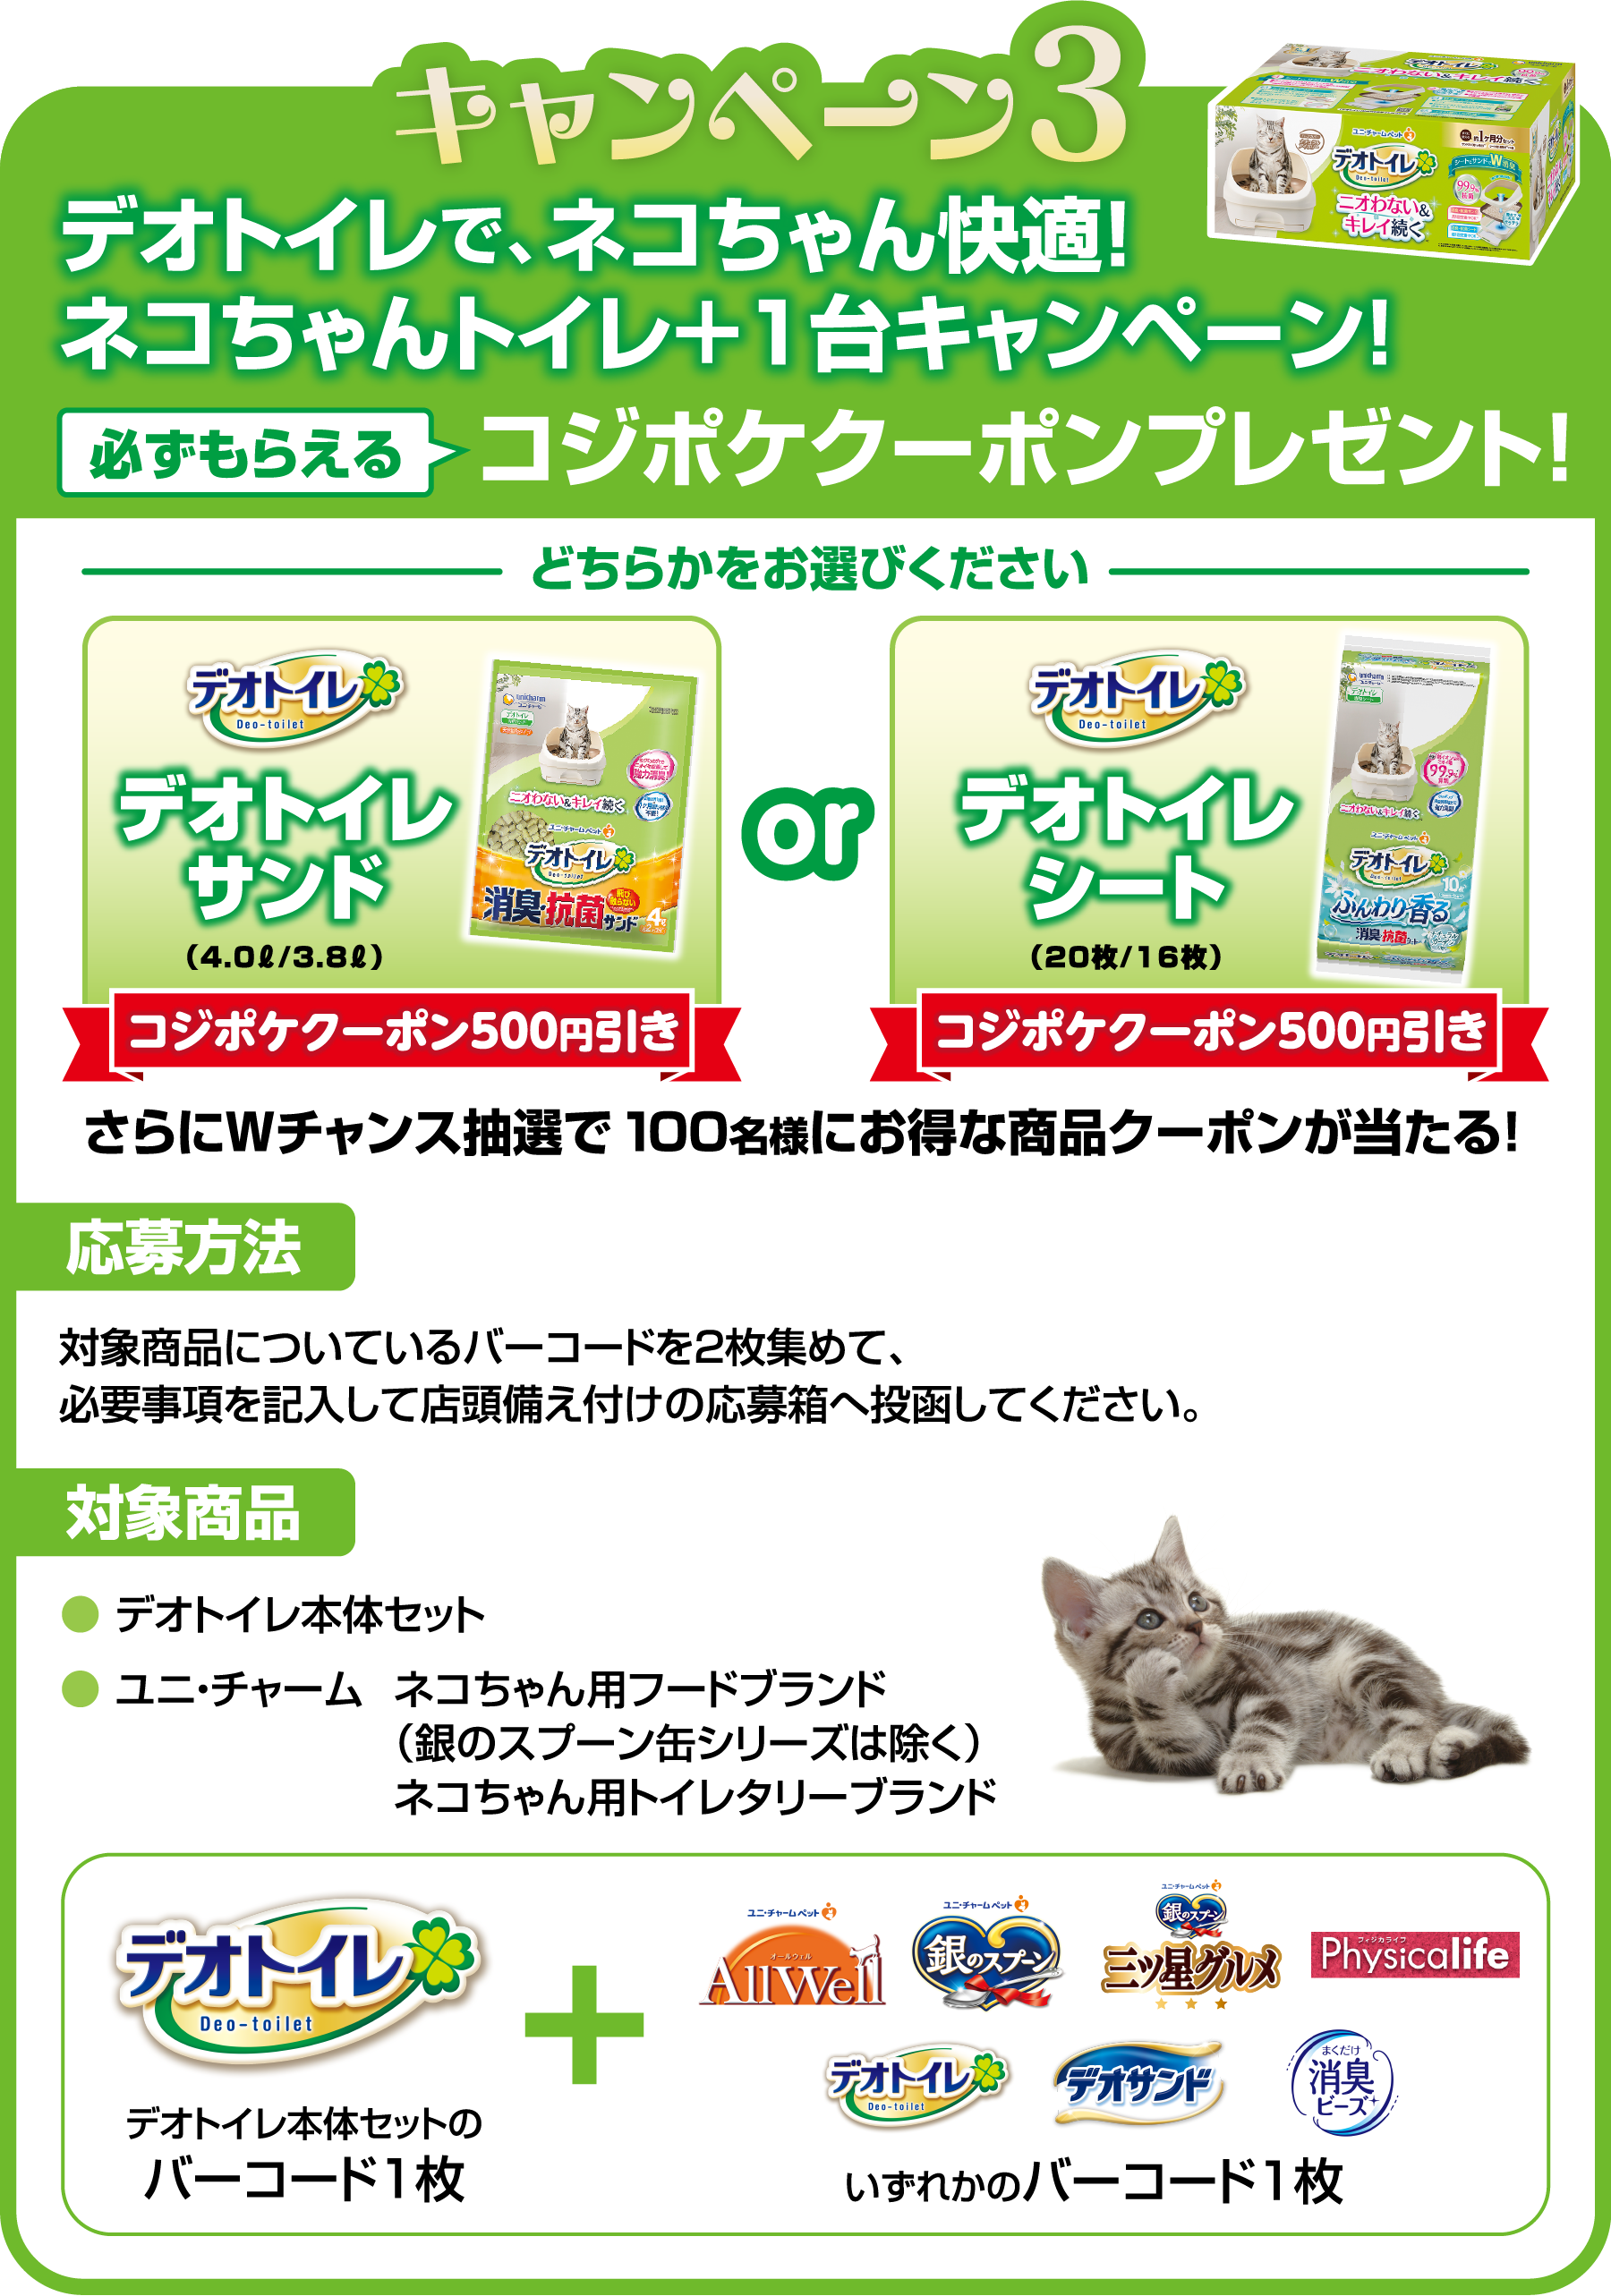 キャンペーン3：デオトイレで、ネコちゃん快適！ネコちゃんトイレ+1台キャンペーン！ 必ずもらえるコジポケクーポンプレゼント！